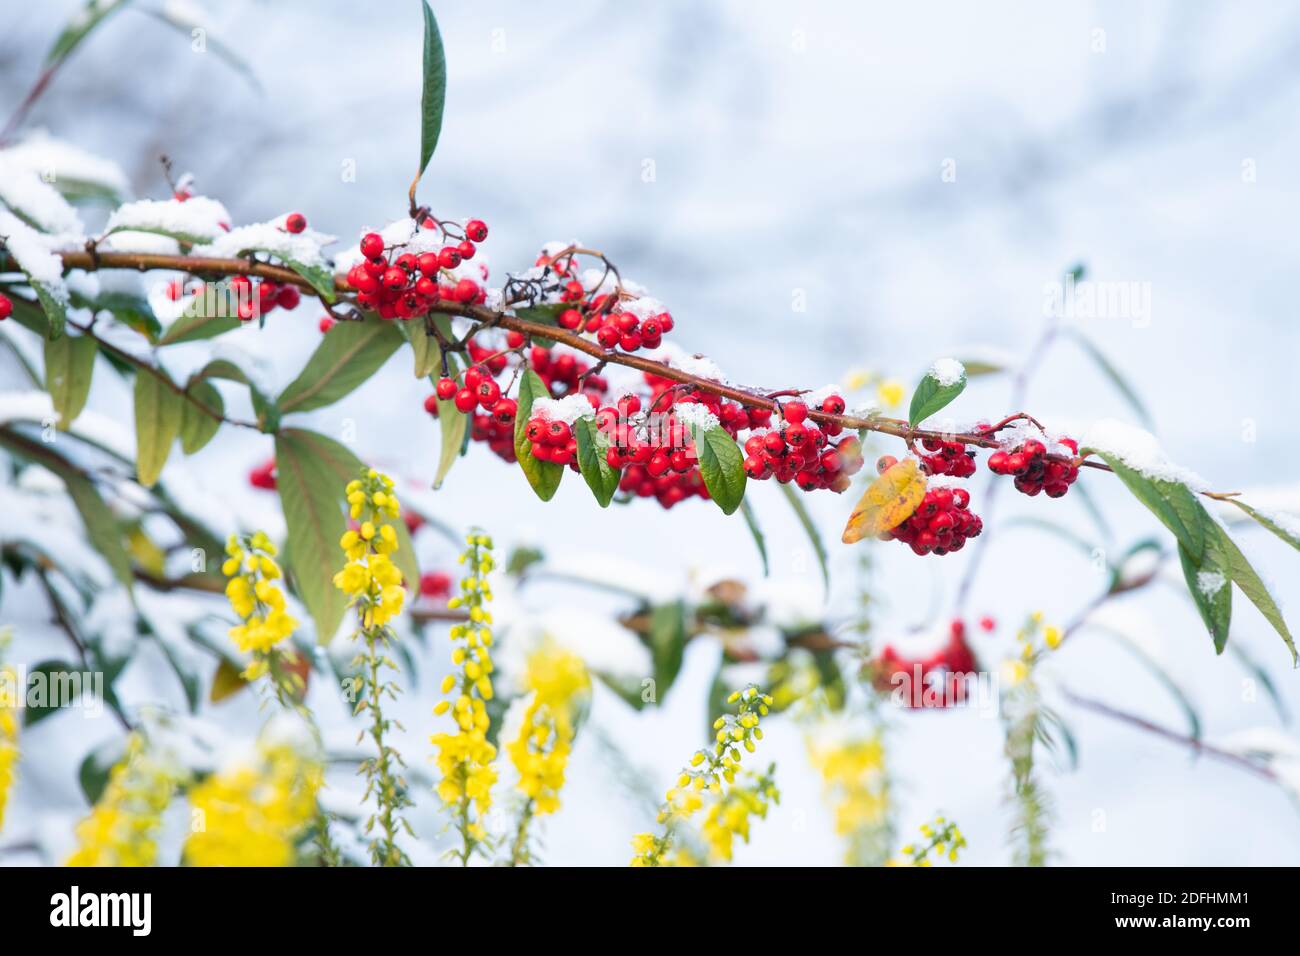 Jardin d'hiver couleur avec fleurs et baies - mahonia et cotoneaster recouvert de neige - Royaume-Uni Banque D'Images